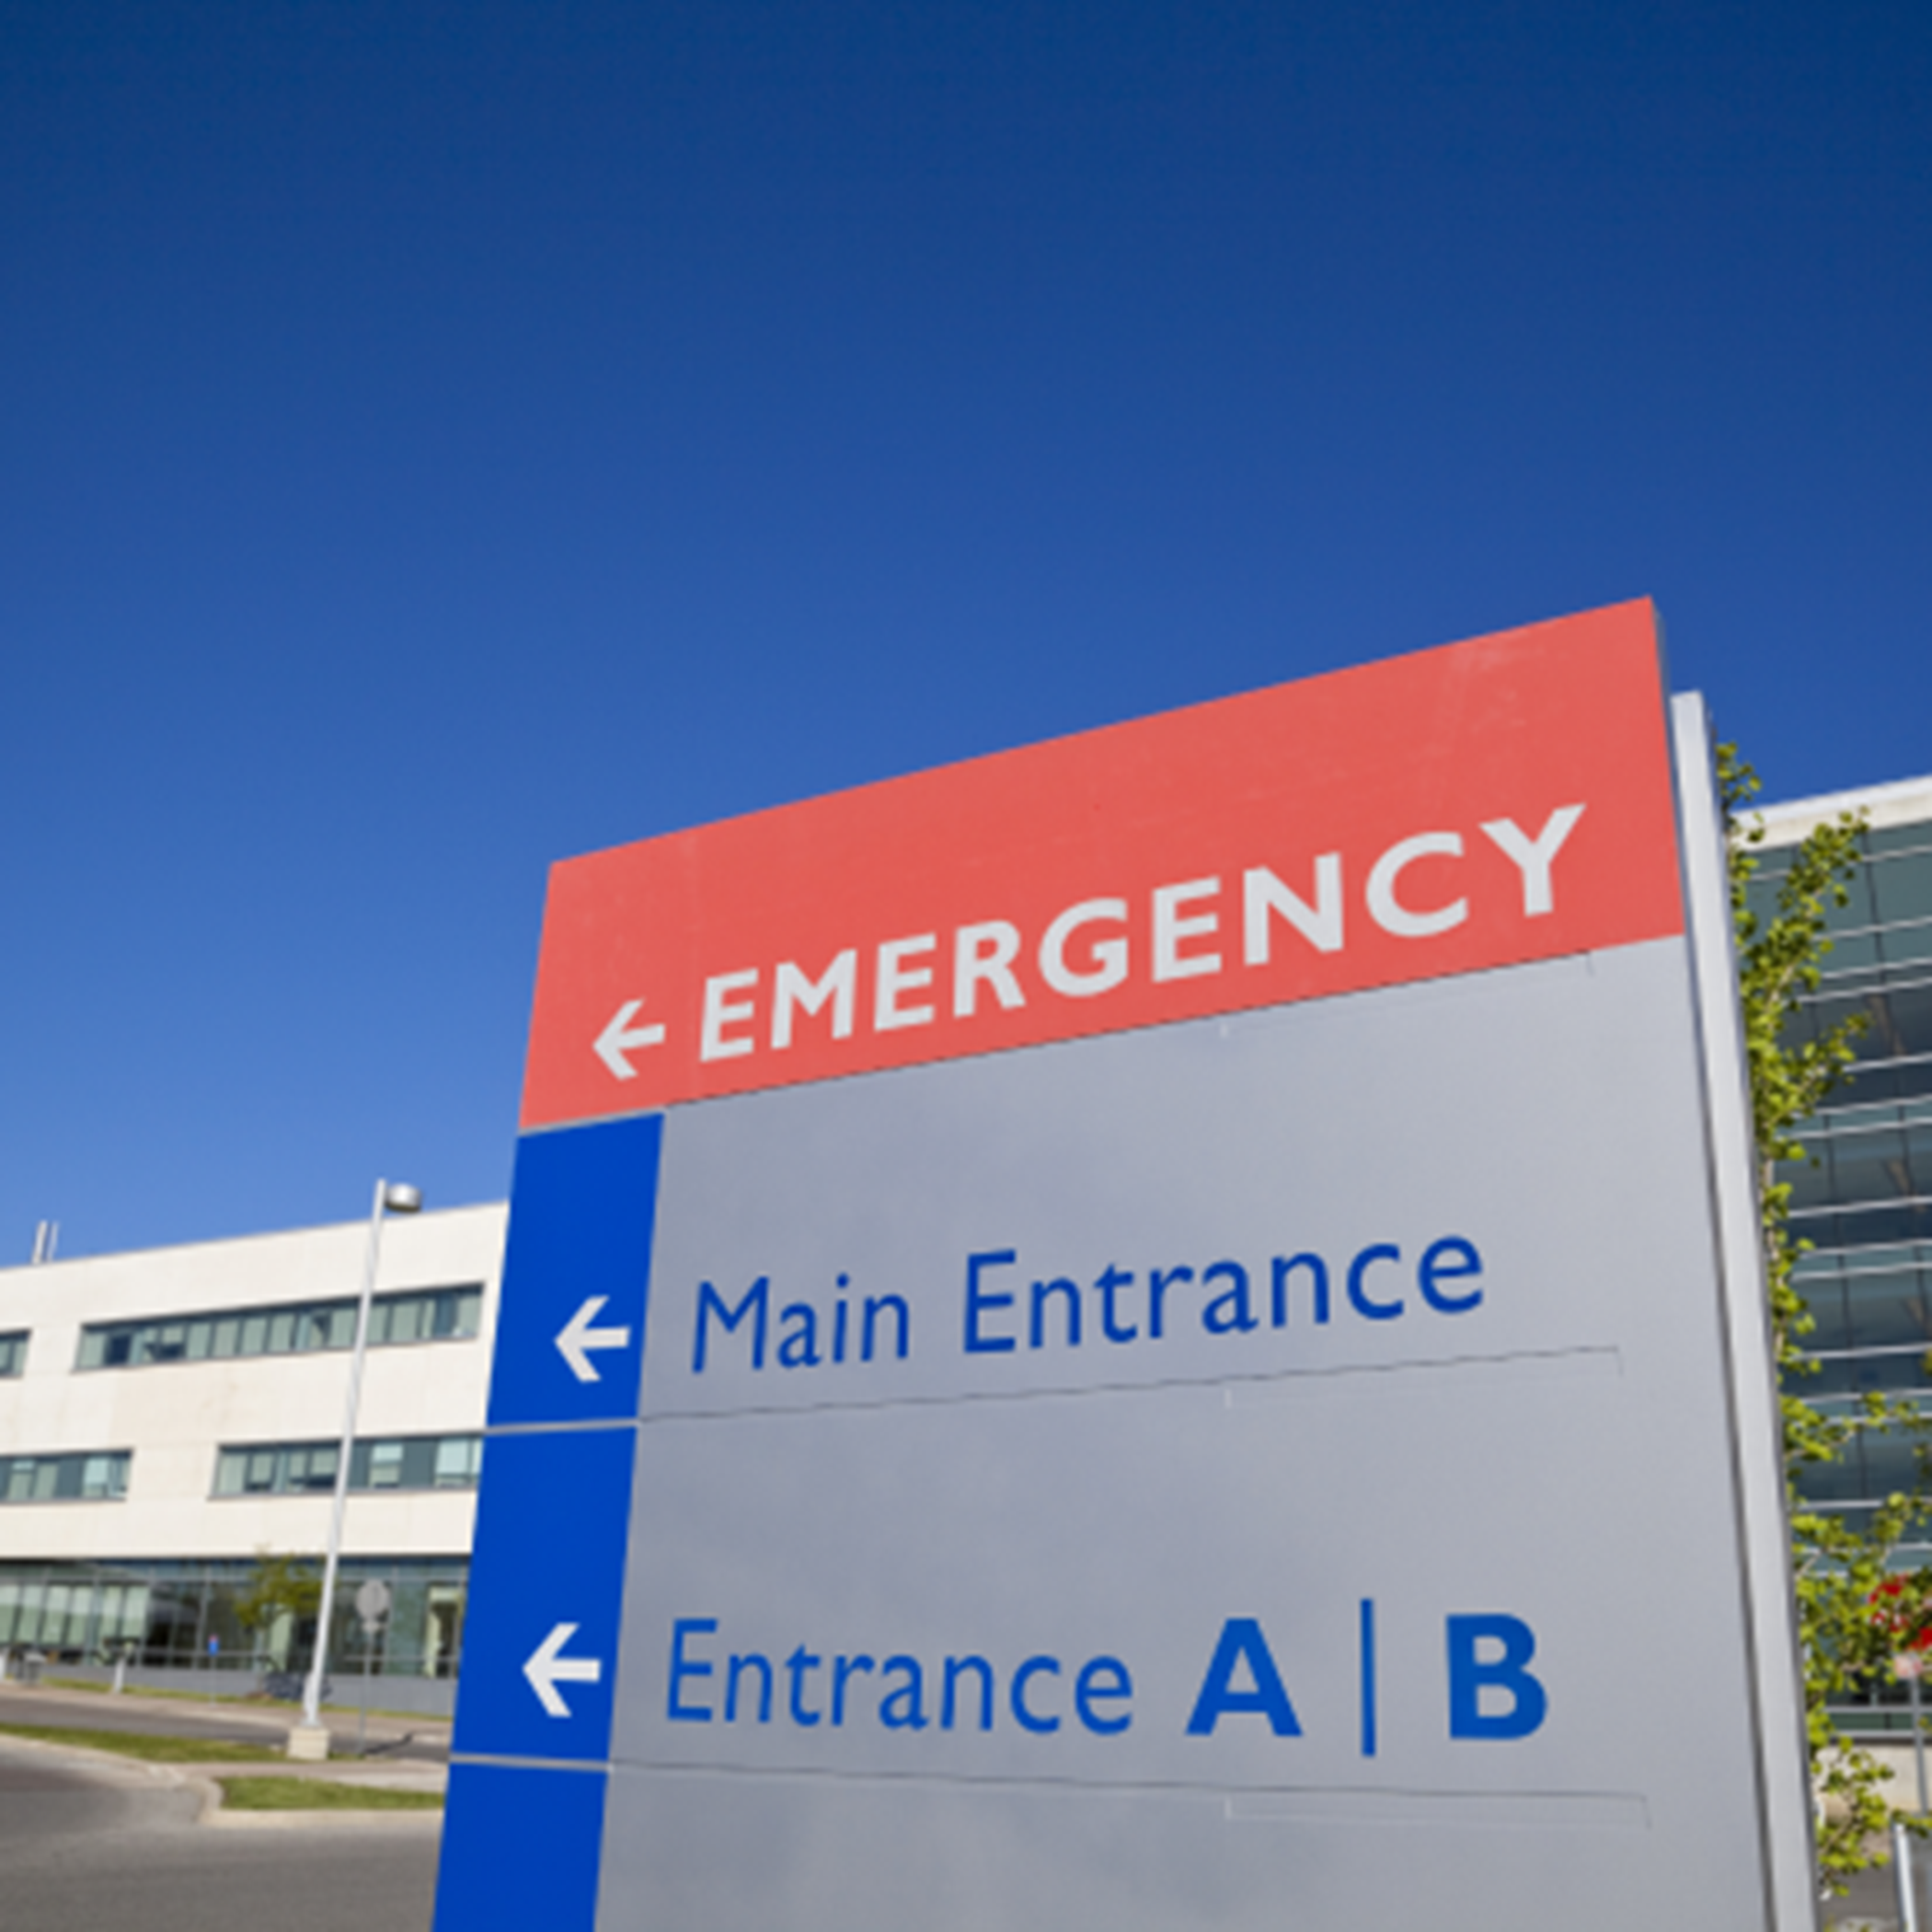 Granary Park Hospital